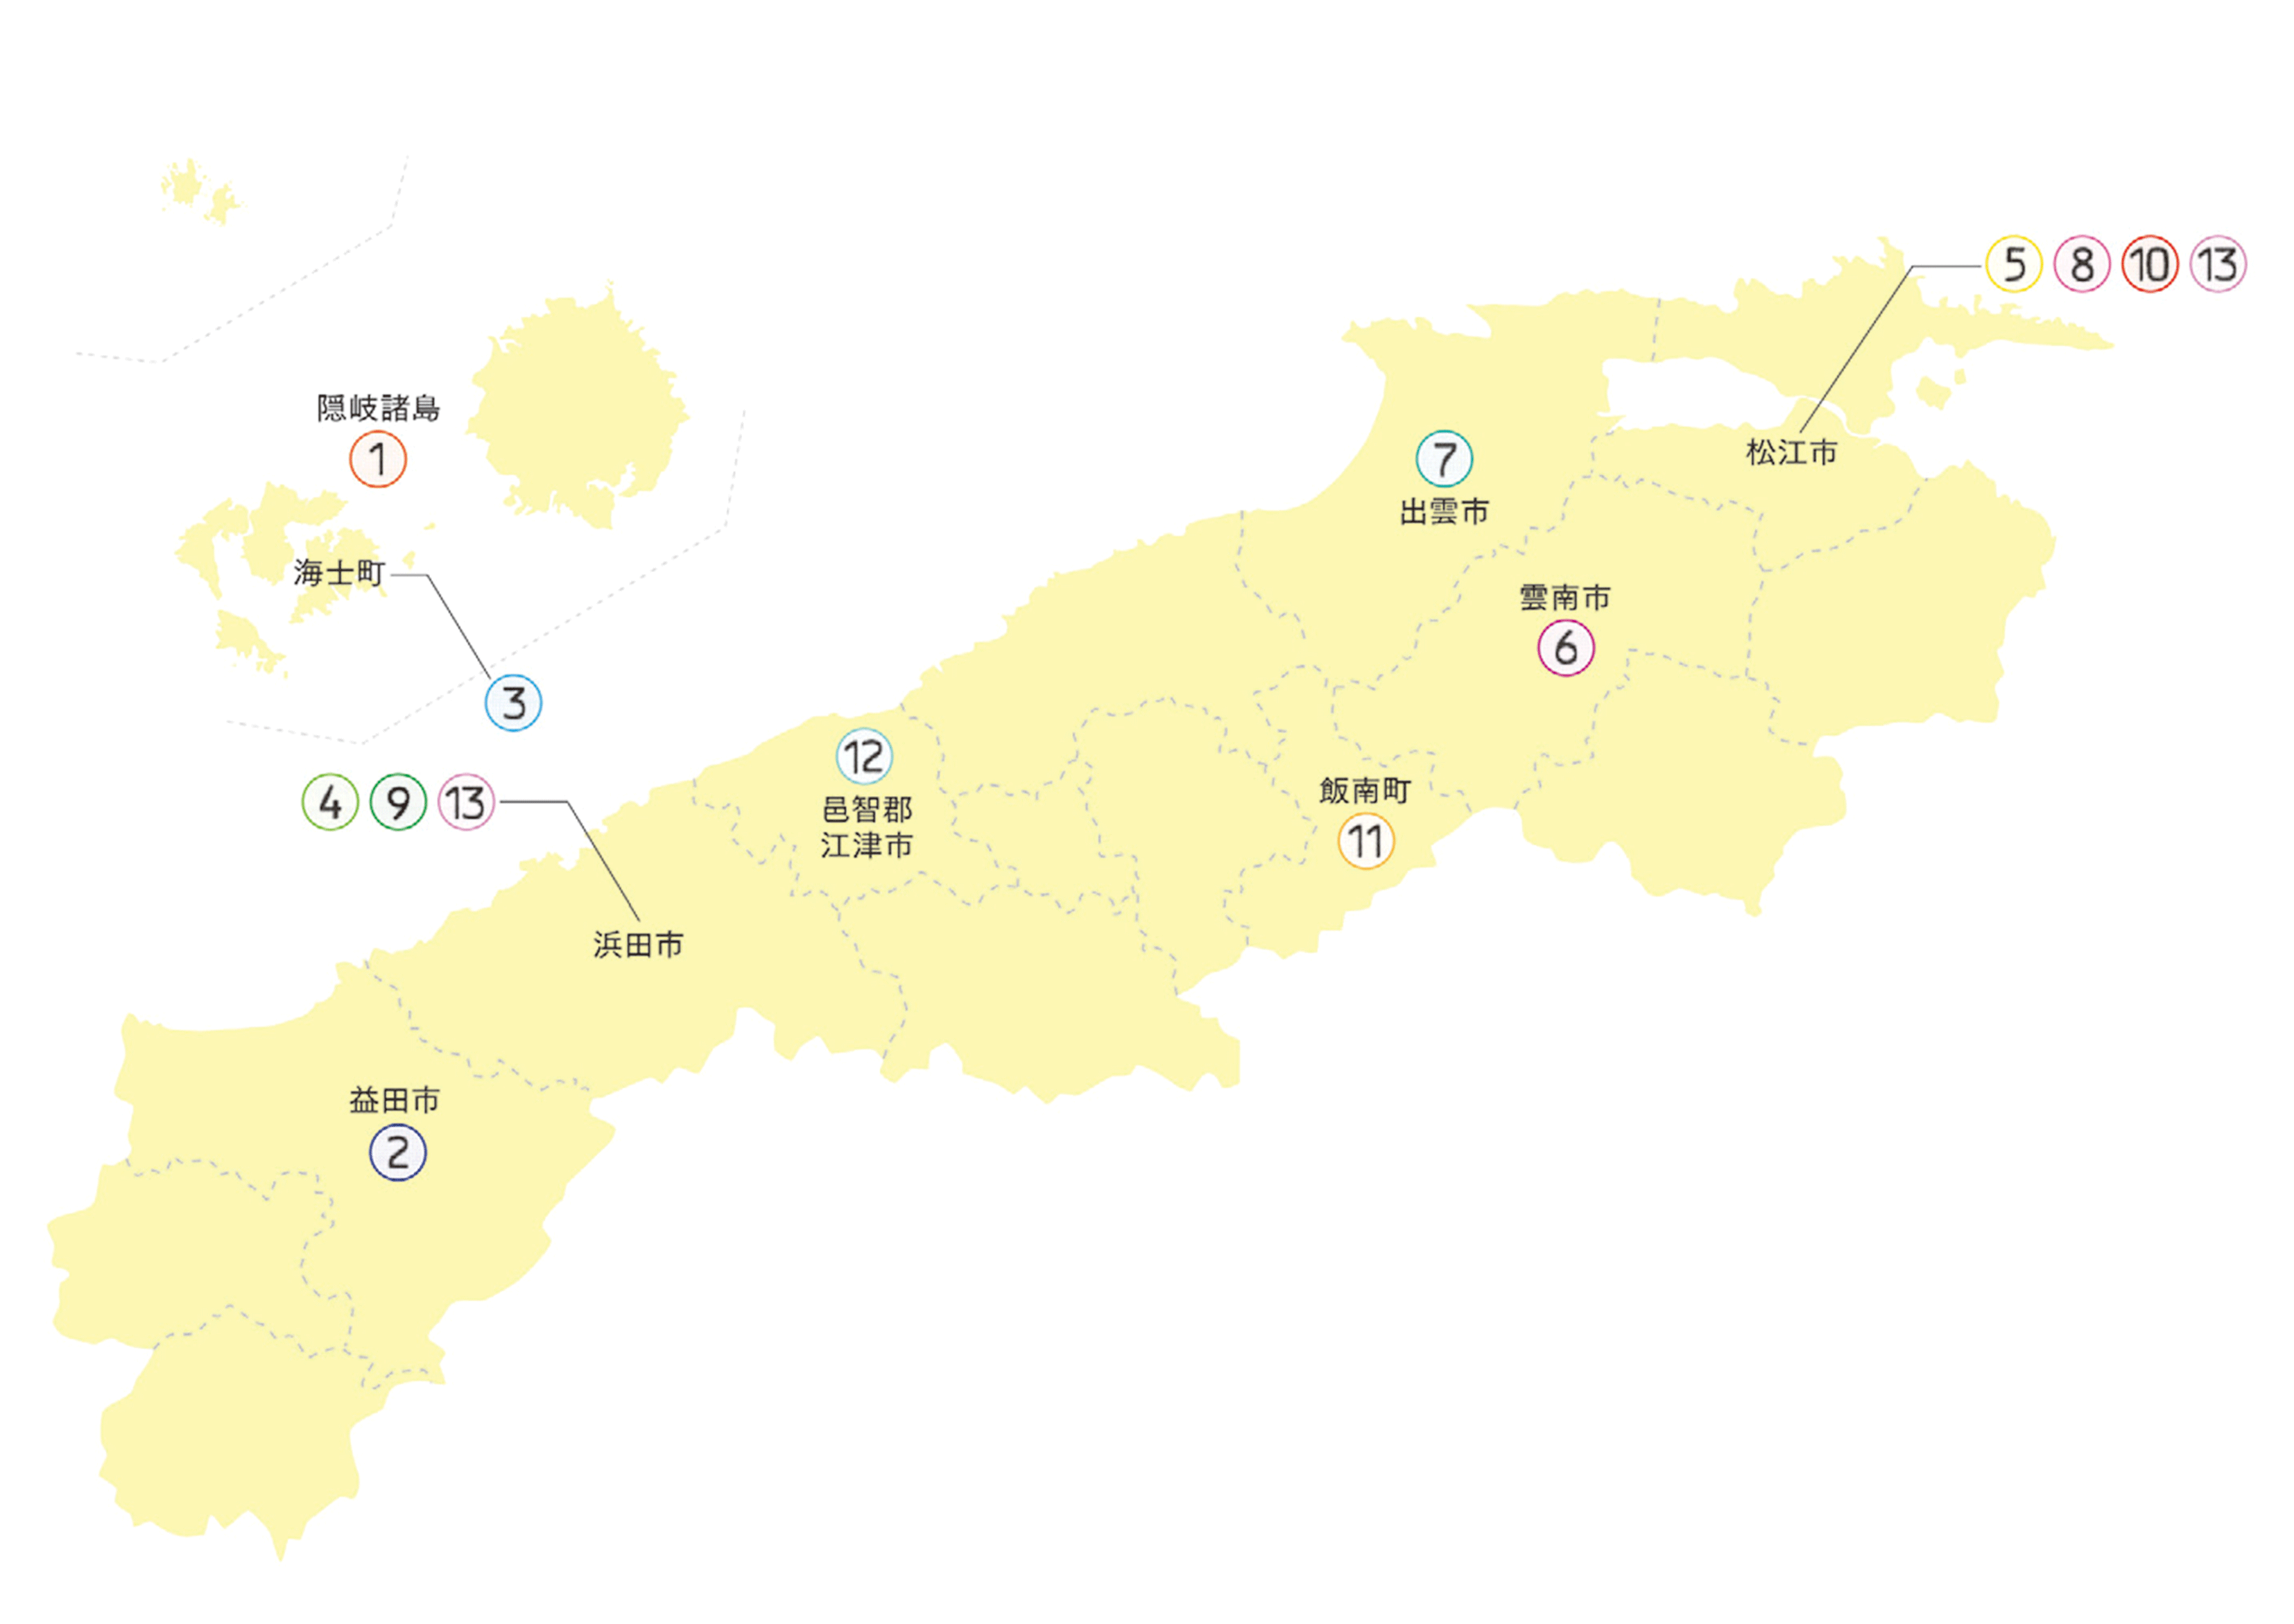 チャレンジ団体の分布を示す島根県の地図